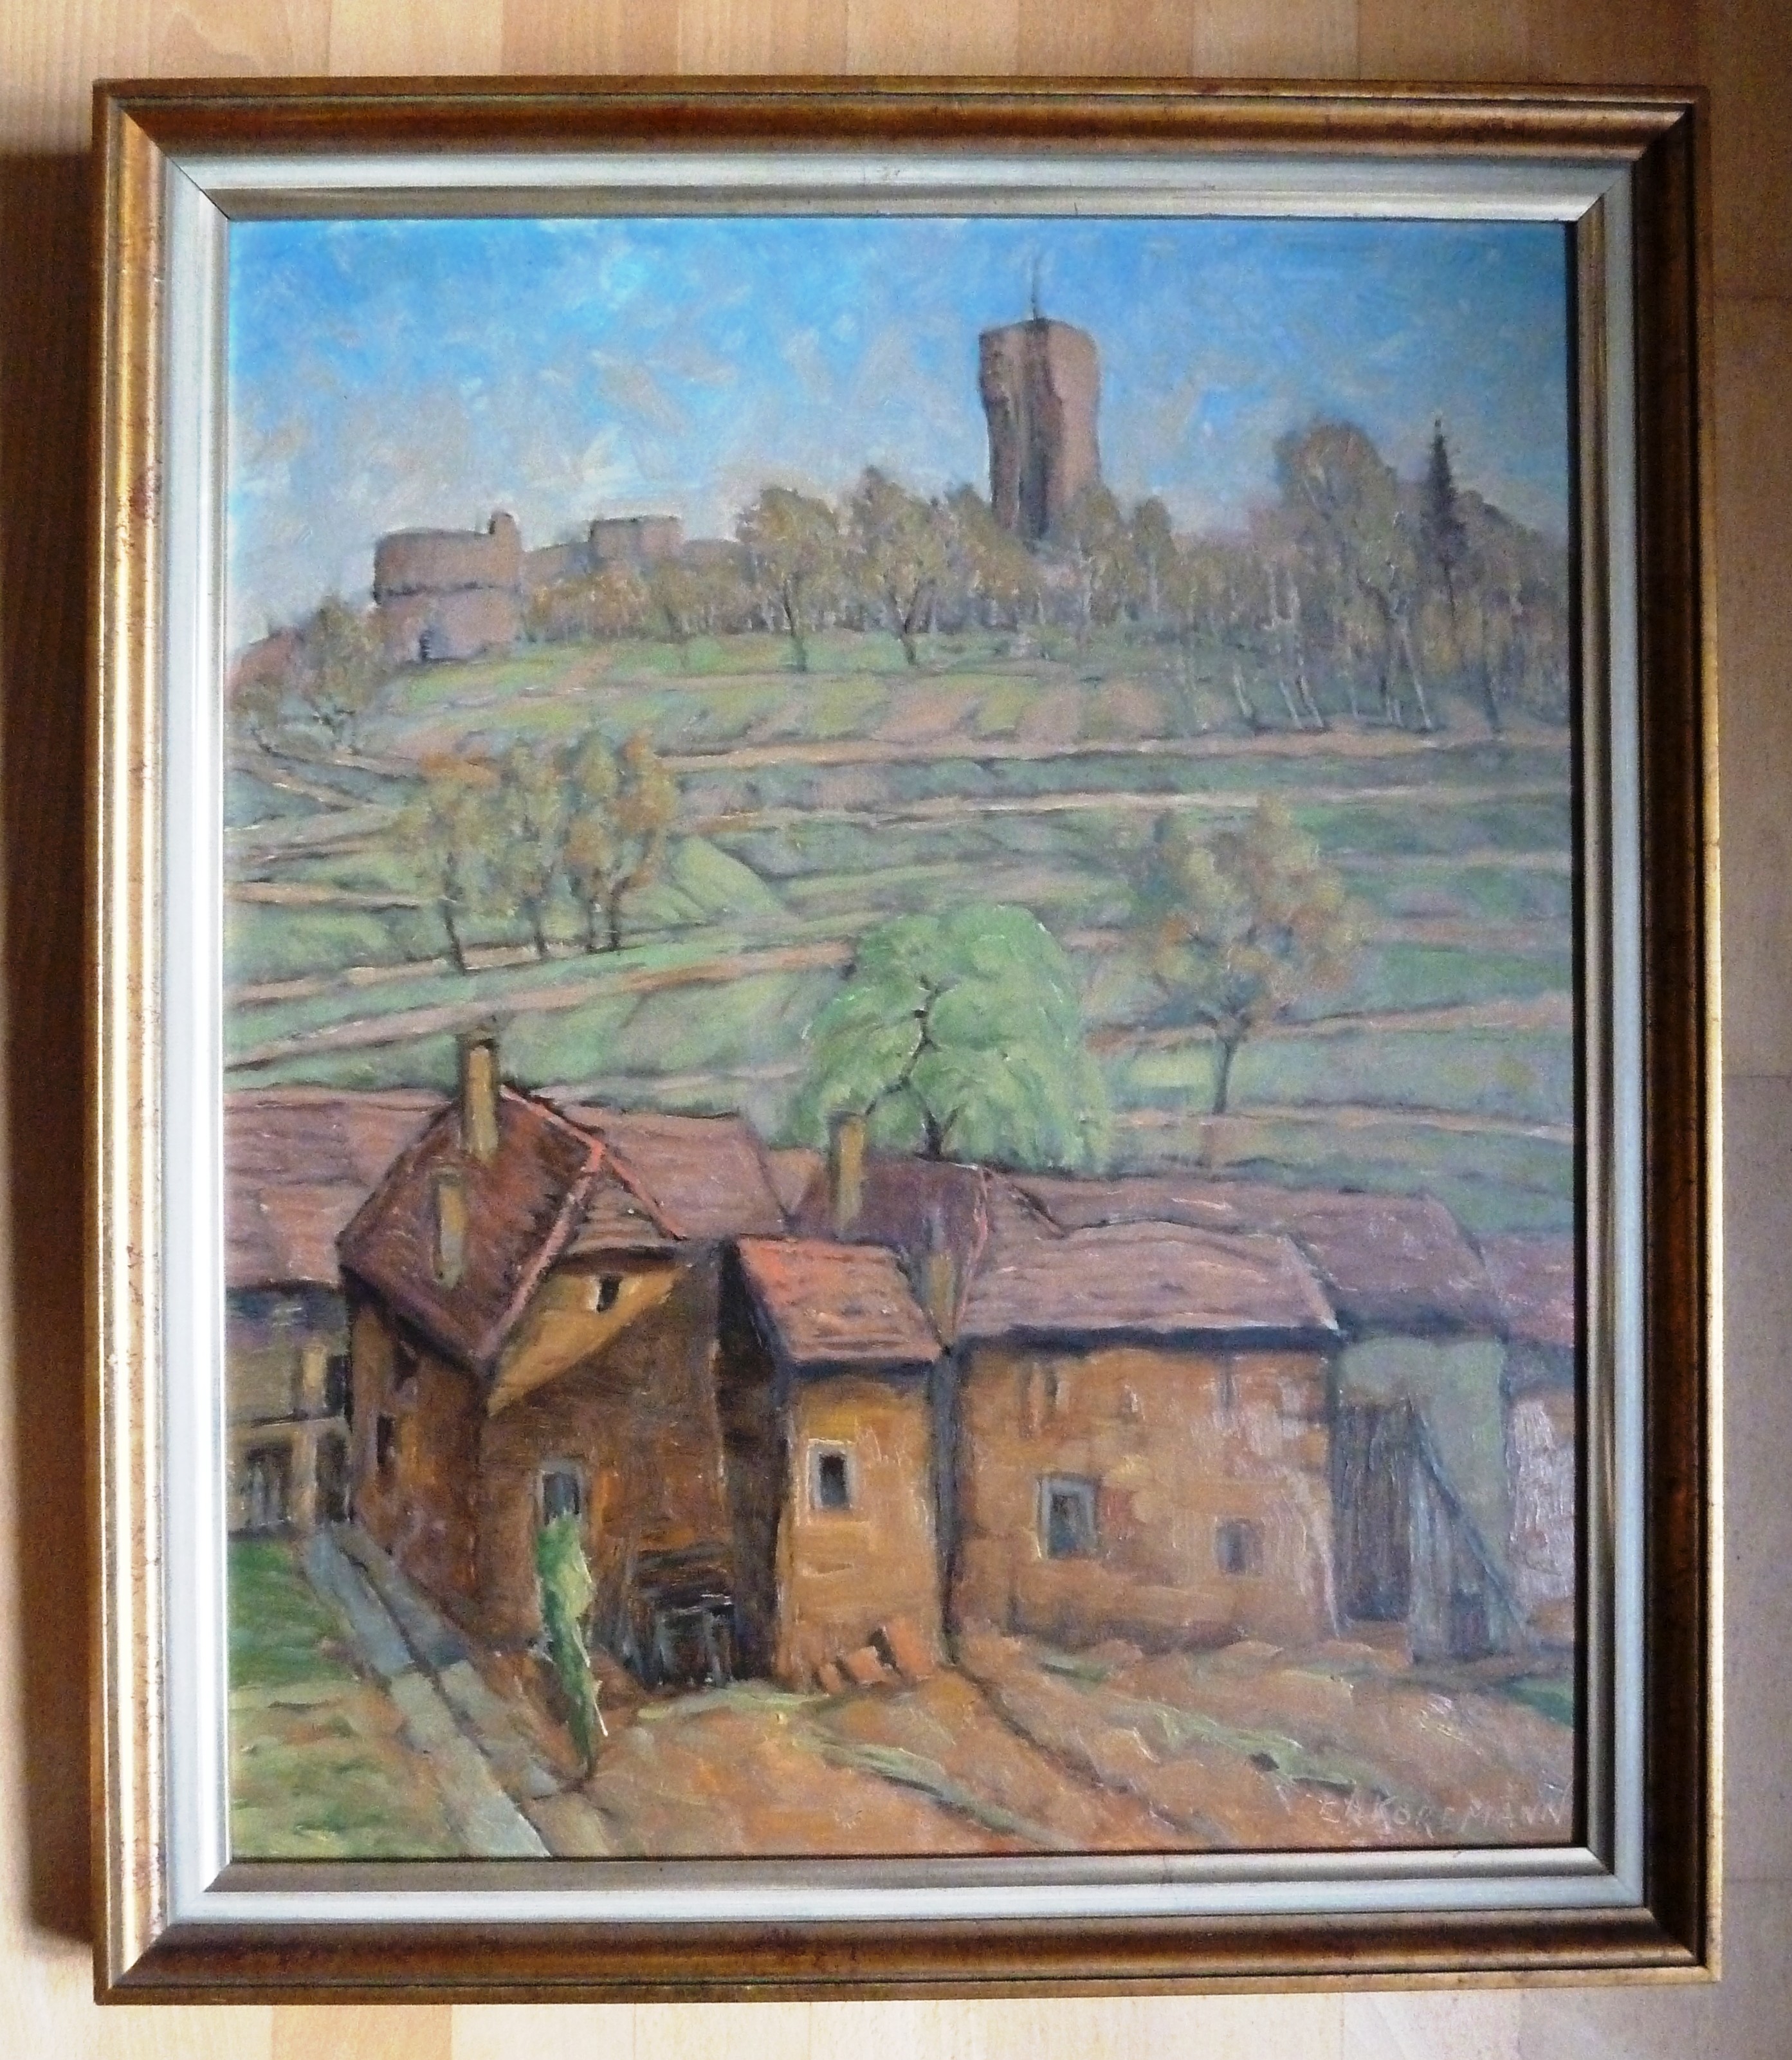 Malerei; Farb-Bild: Dorf mit Burg; Öl auf Leinwand; Carl Korbmann, 1950 (Stadtmuseum Bad Dürkheim, Museumsgesellschaft Bad Dürkheim e.V. CC BY-NC-SA)